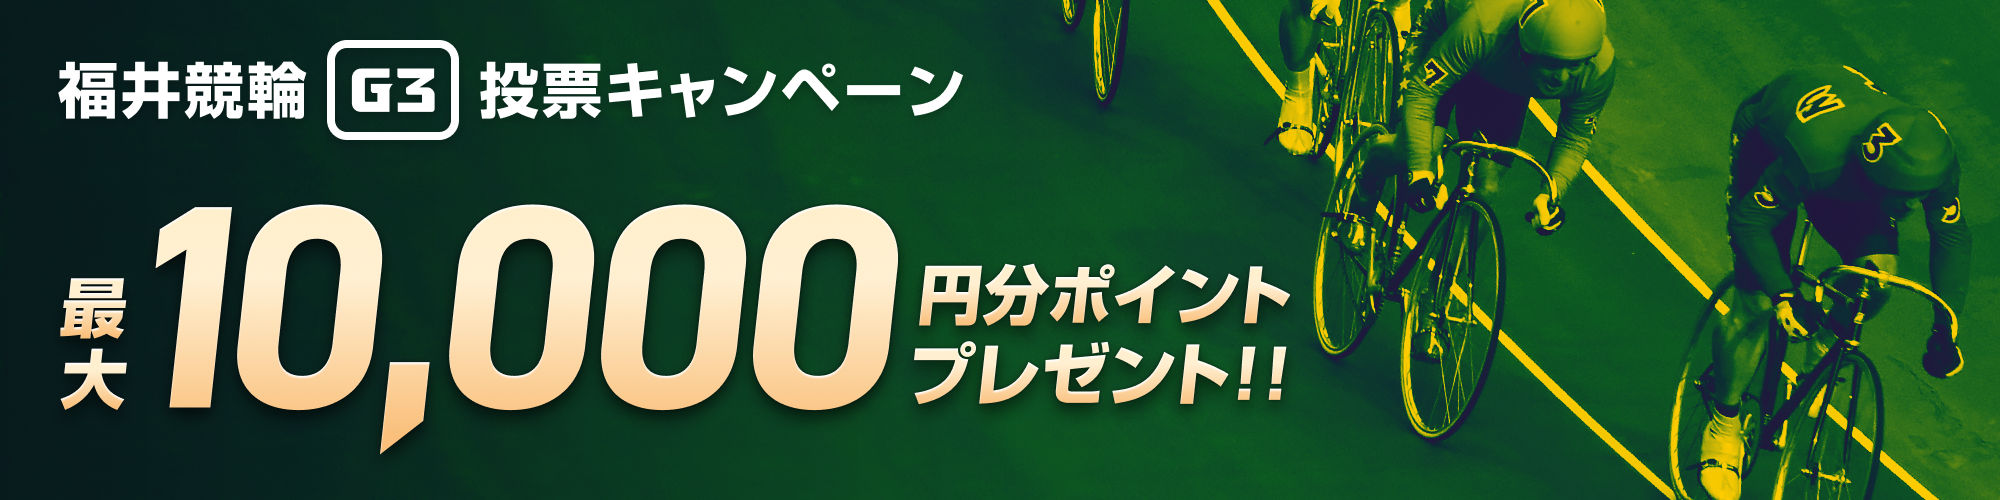 【最大1万円分当たる】福井競輪開設70周年記念 不死鳥杯（G3） 投票キャンペーン